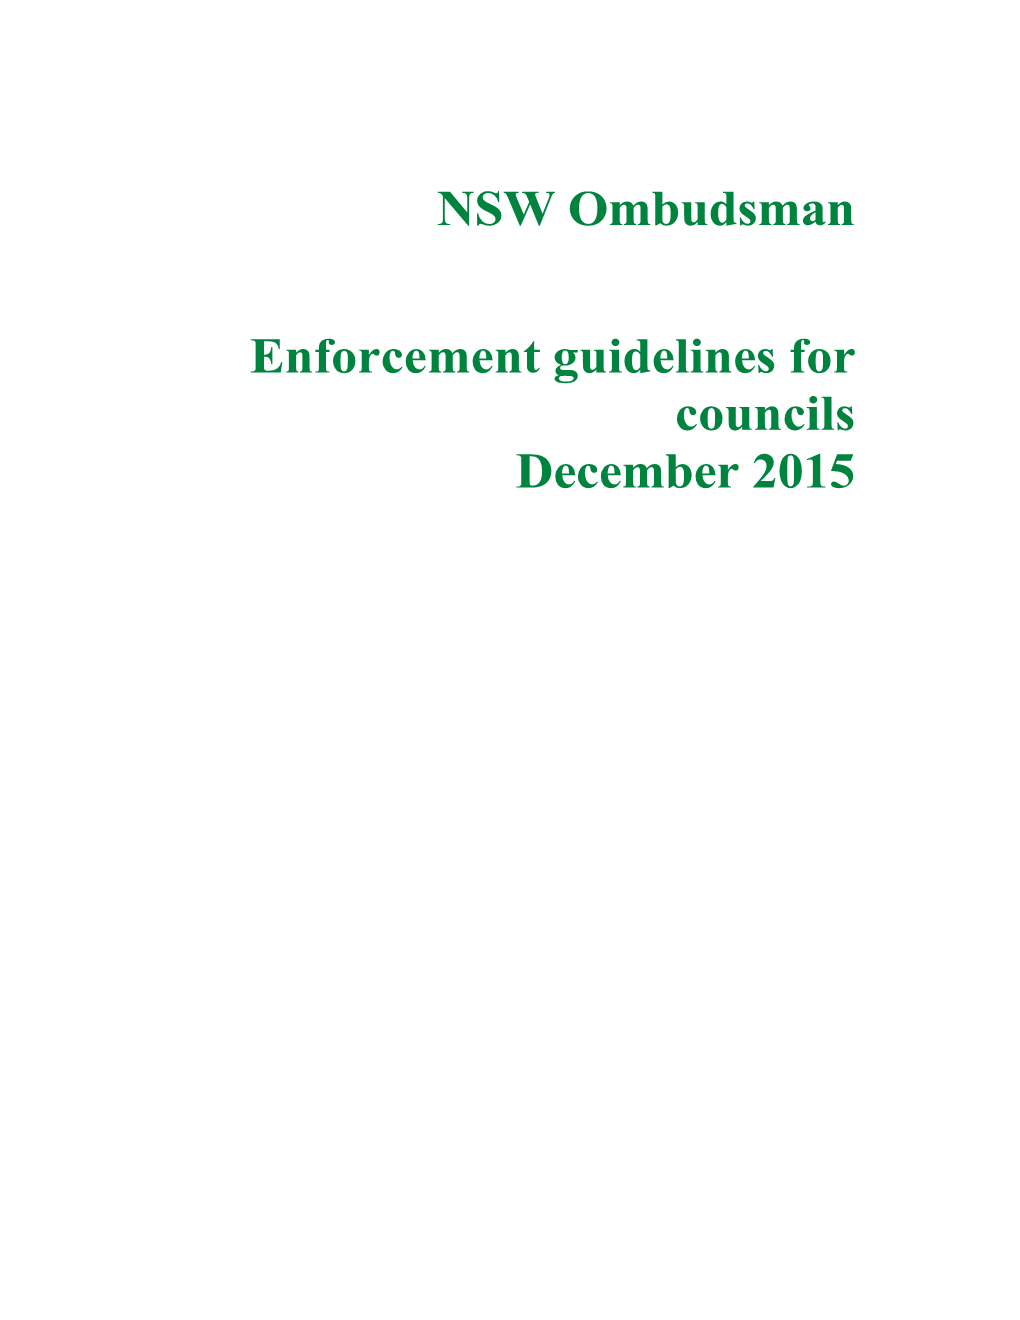 Enforcement Guidelines for Councils